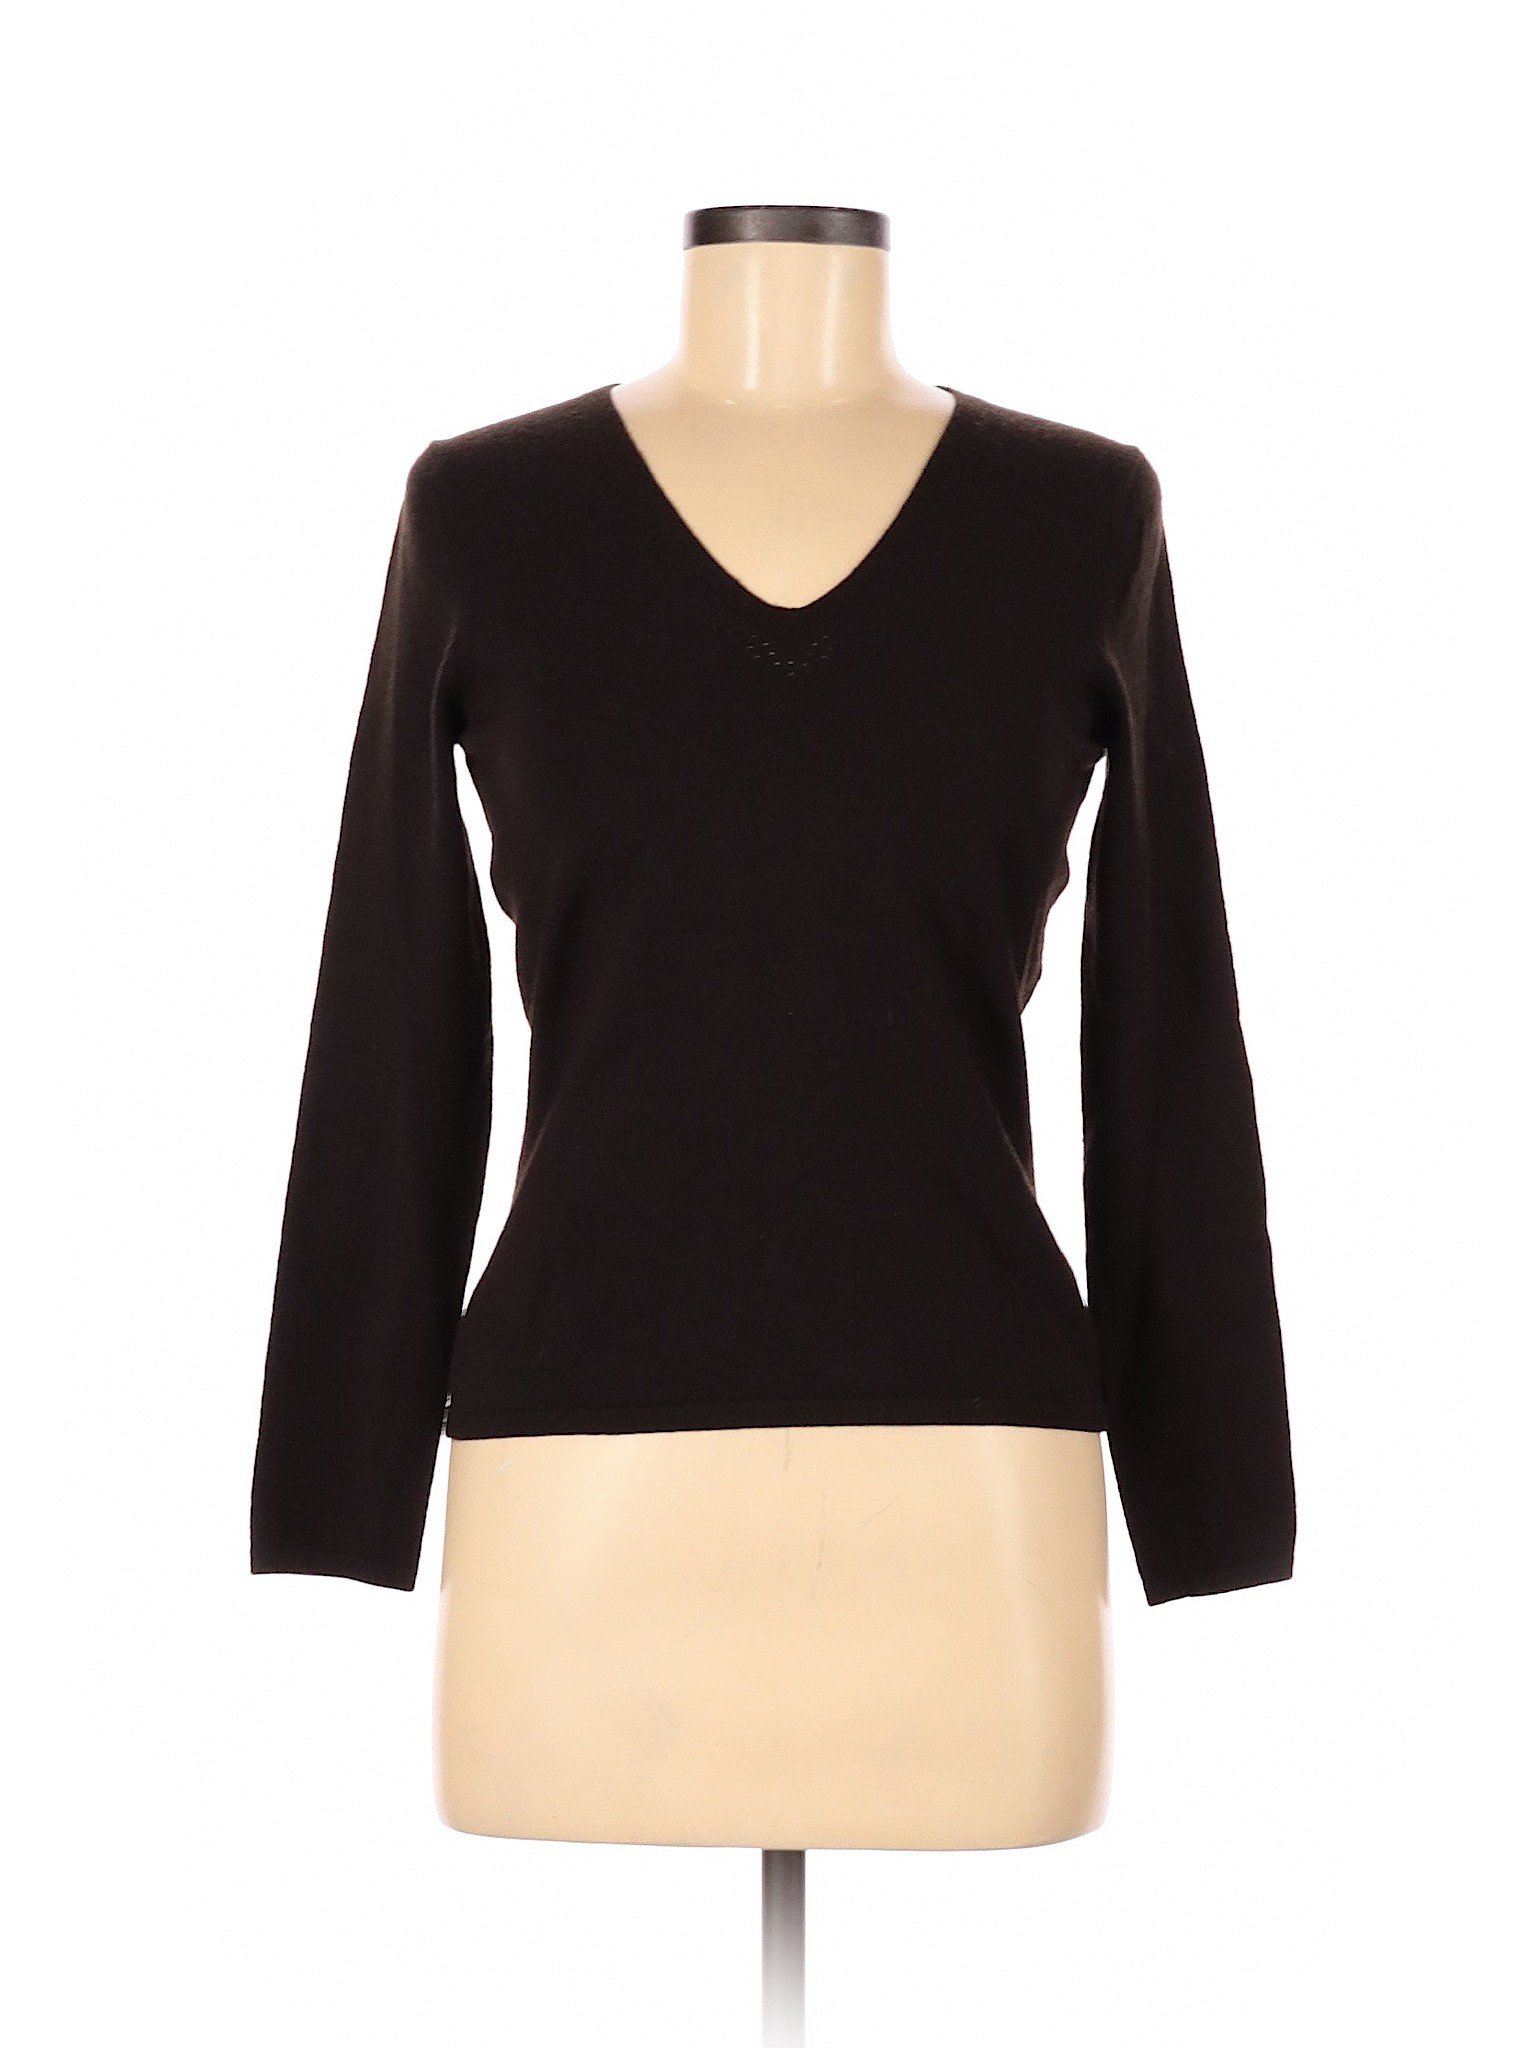 Ann Taylor Women Black Wool Pullover Sweater S | eBay